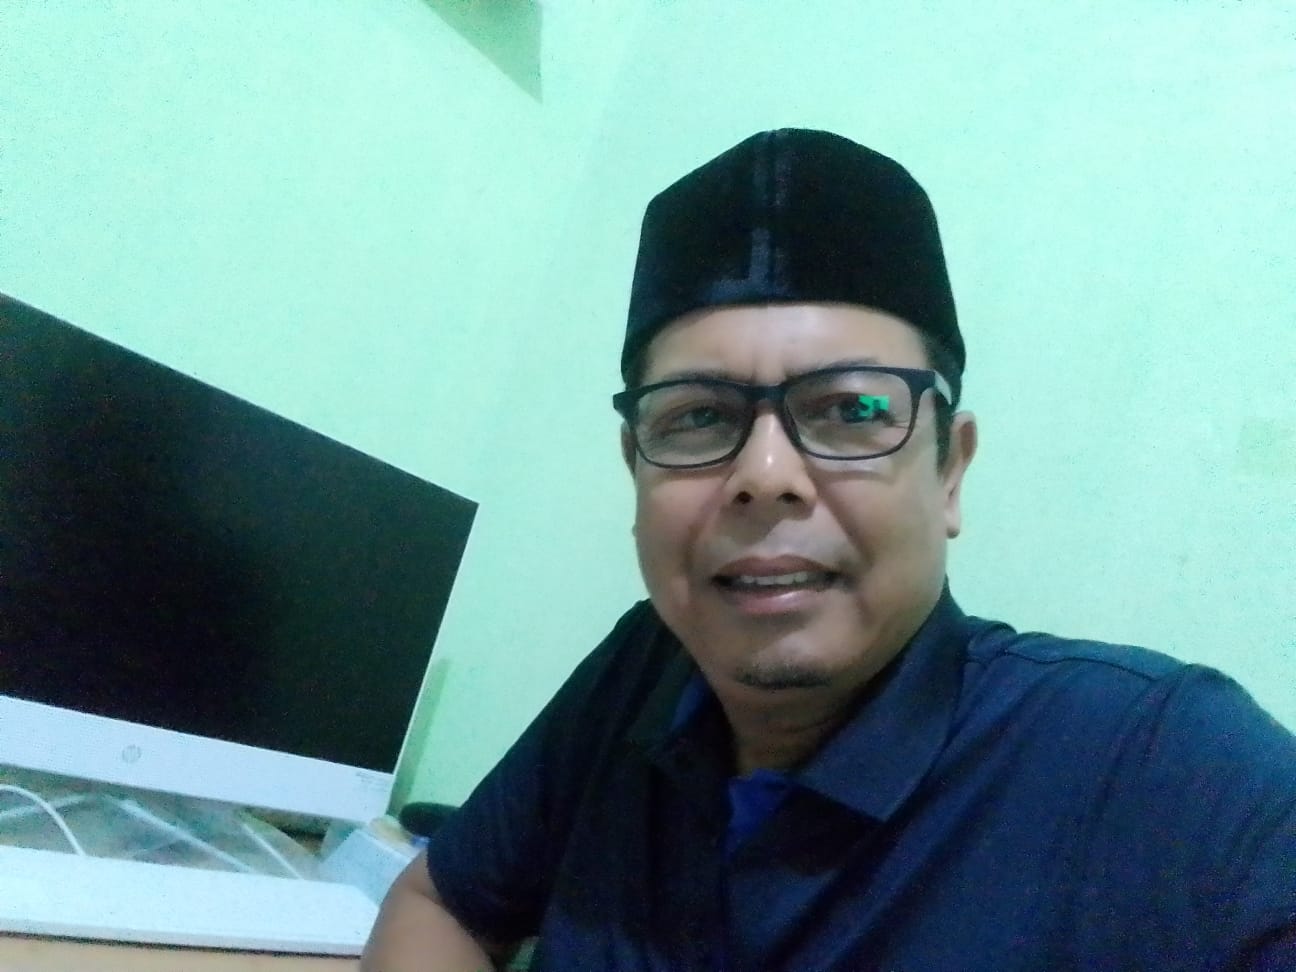 Brigade Nasional Sebut UMKM Solusi Pengentasan Kemiskinan di Aceh